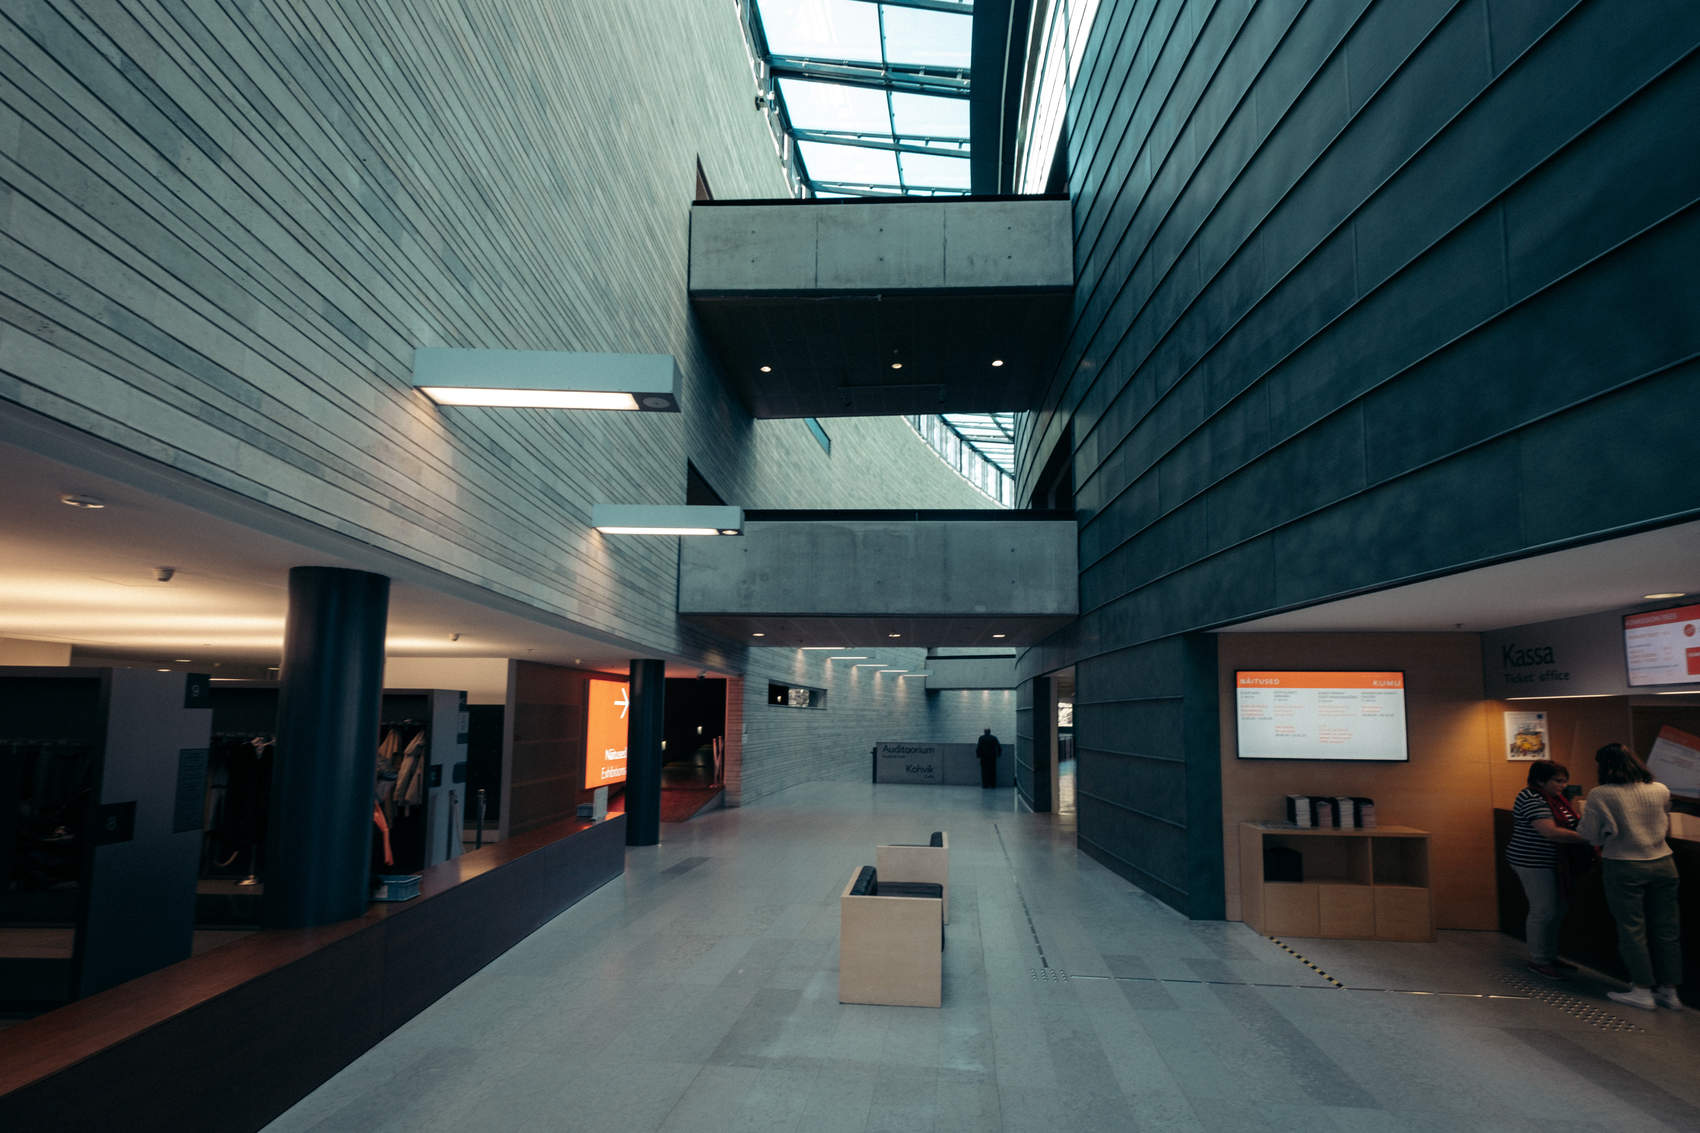 Teneti võttepaigad Tallinnas: Kumu kunstimuuseum, filmis Oslo vabasadam. Foto: Kadi-Liis Koppel